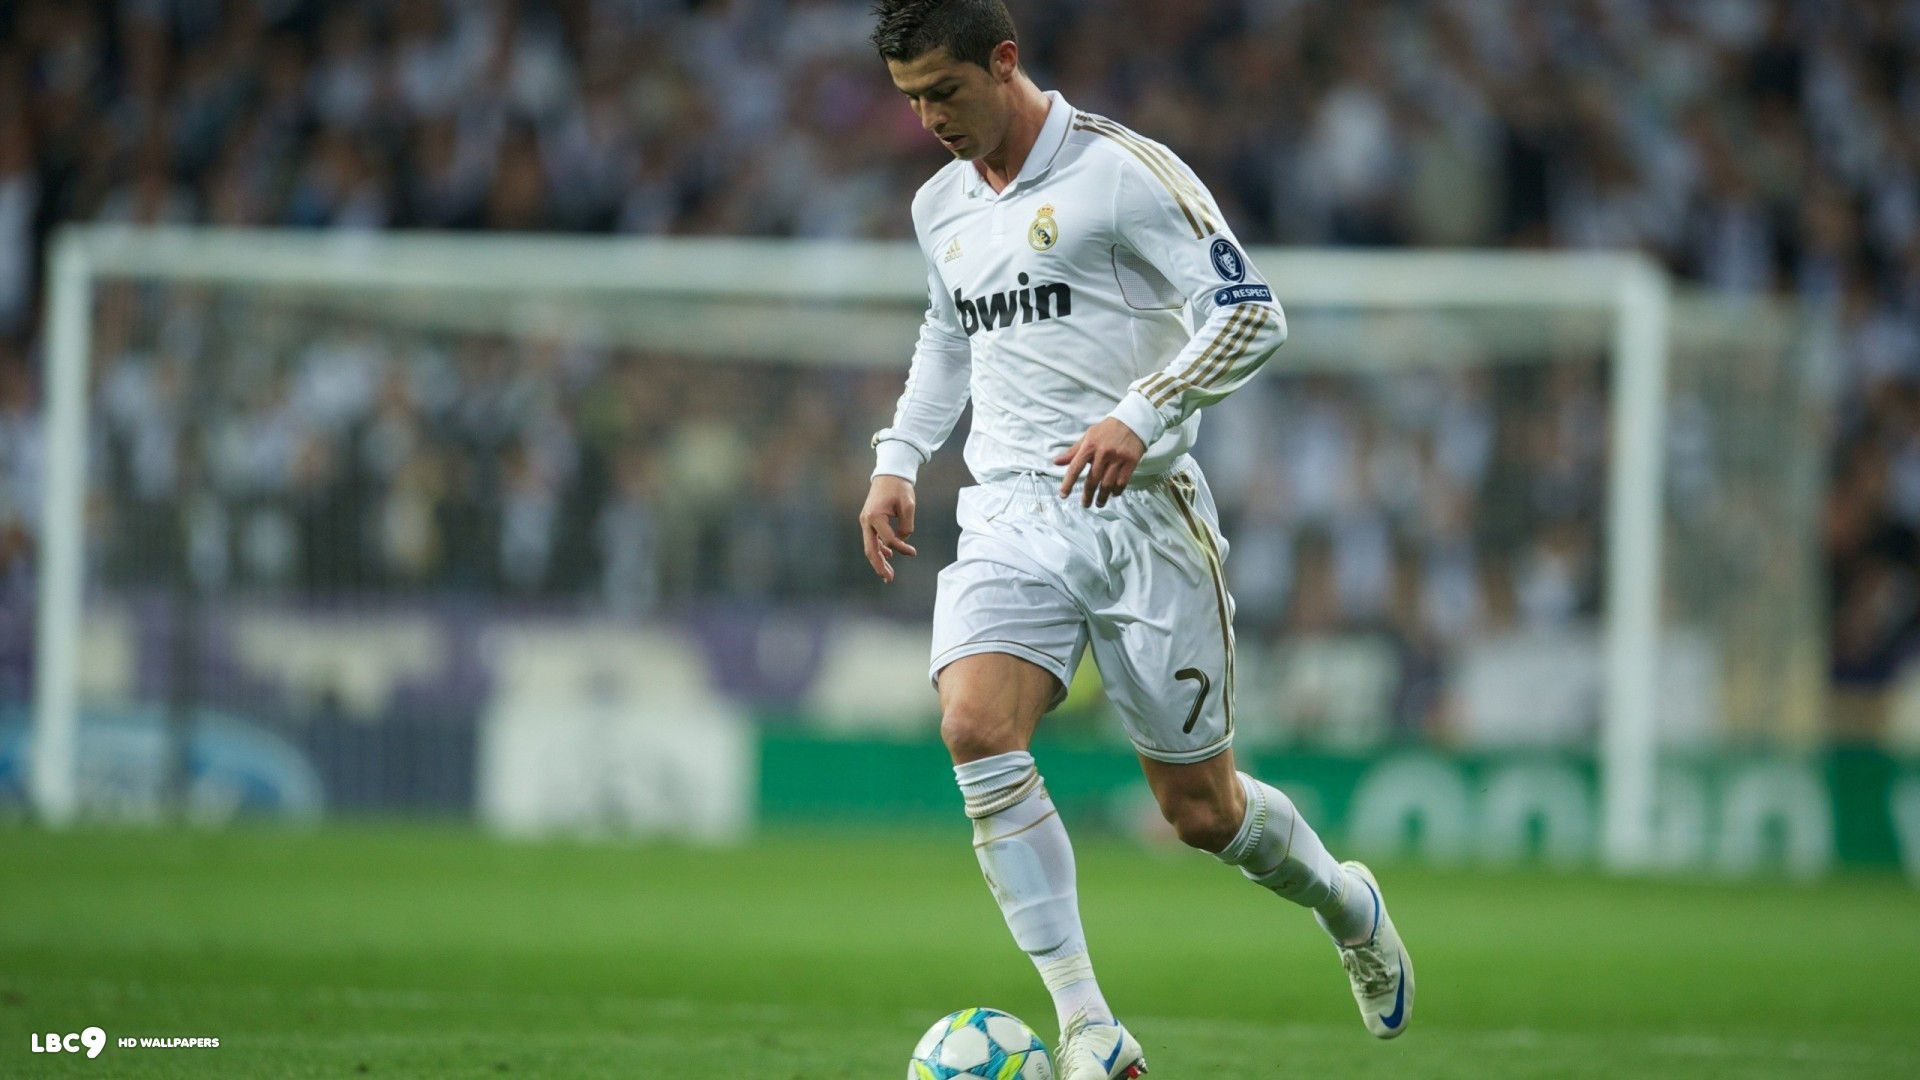 Cristiano Ronaldo hình nền 1080p - Tận hưởng mọi chi tiết về cầu thủ huyền thoại này trong độ phân giải cao với hình nền 1080p của Cristiano Ronaldo. Hình nền này sẽ làm bạn phấn khích với mọi chuyển động đầy uyển chuyển của CR